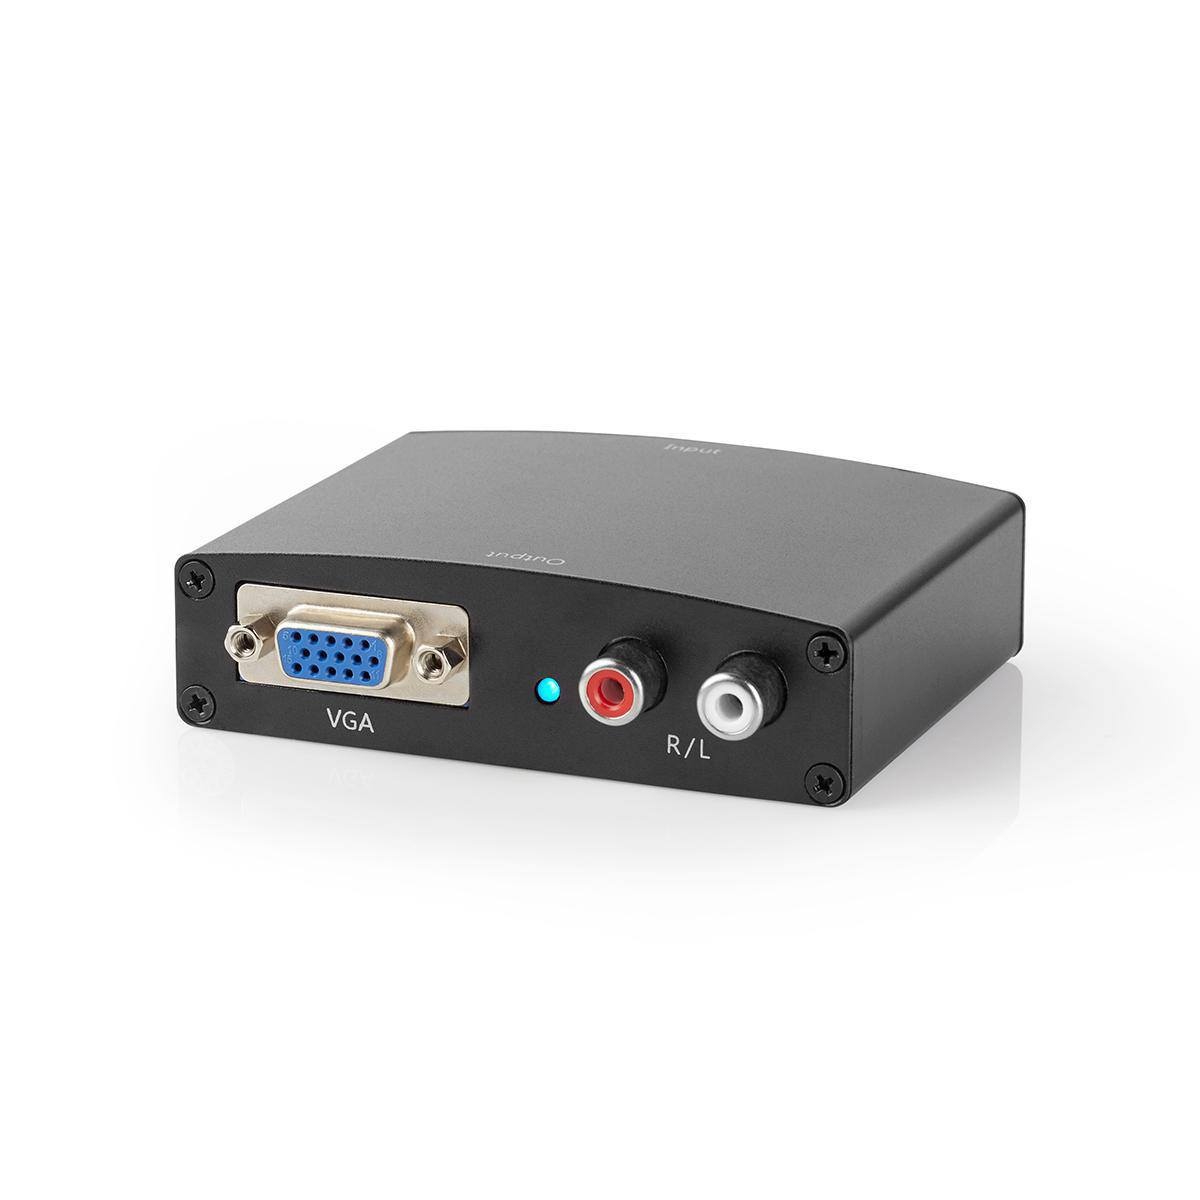 HDMI NEDIS Converter VCON3450AT